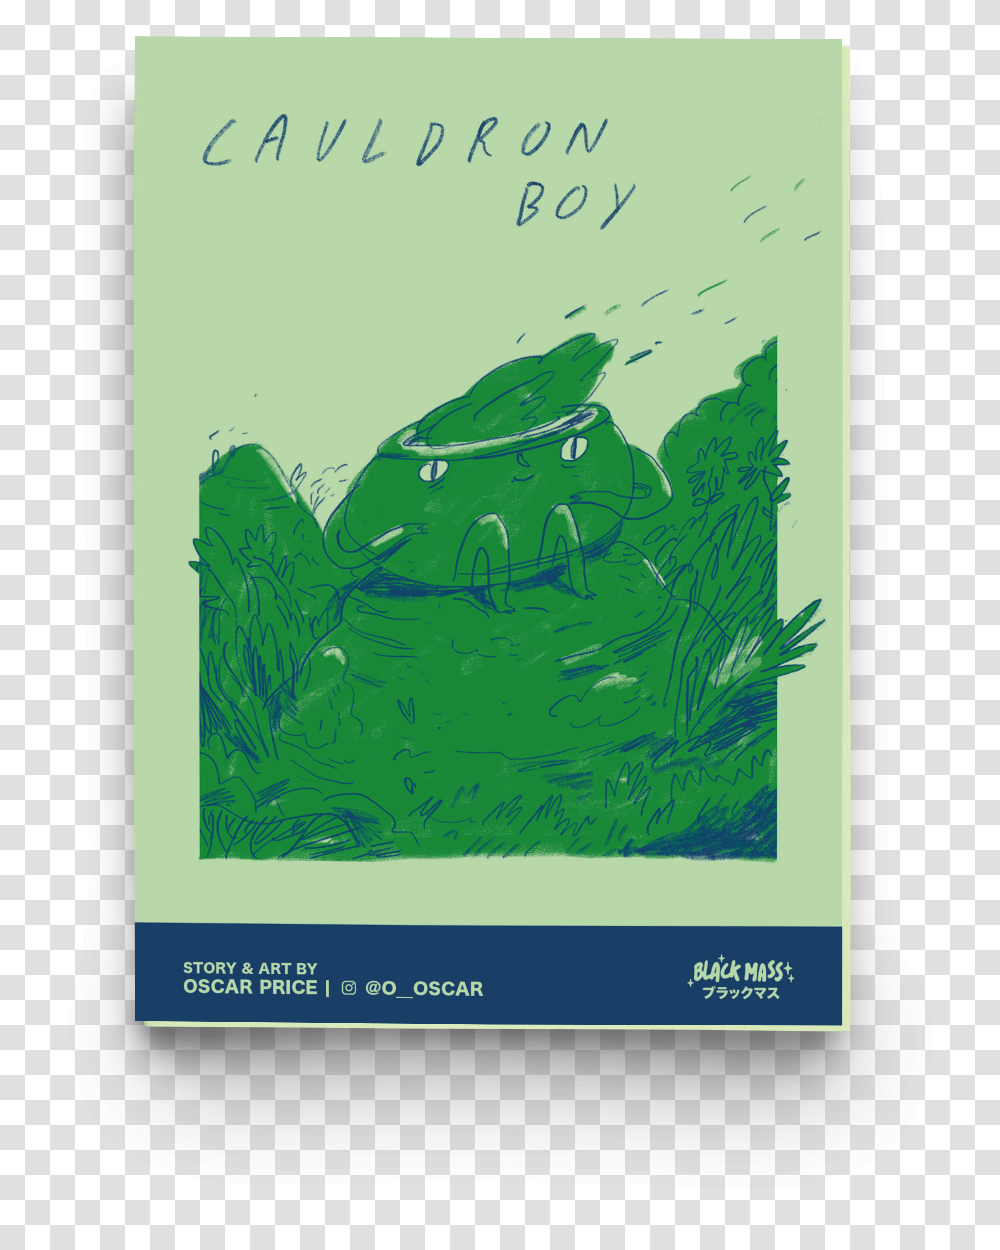 Cauldron Boy Graphic Design, Plant, Poster, Advertisement Transparent Png